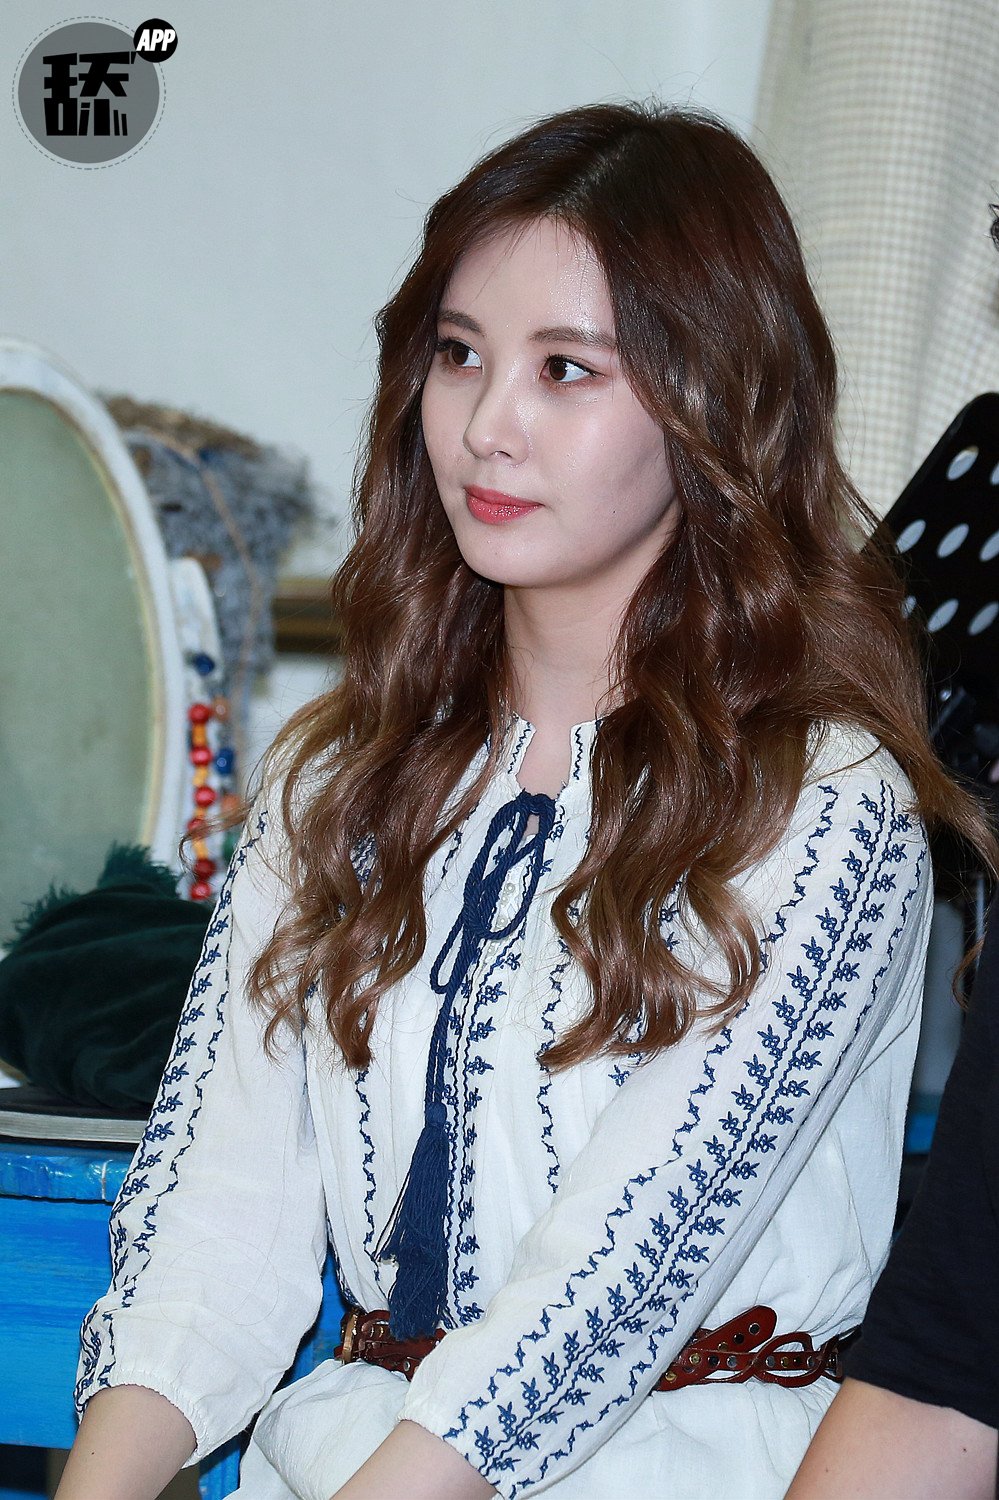 [OTHER][08-12-2015]SeoHyun tham dự vở nhạc kịch mới mang tên "Mamma Mia!" - Page 2 -rjGjcwNU6-3000x3000